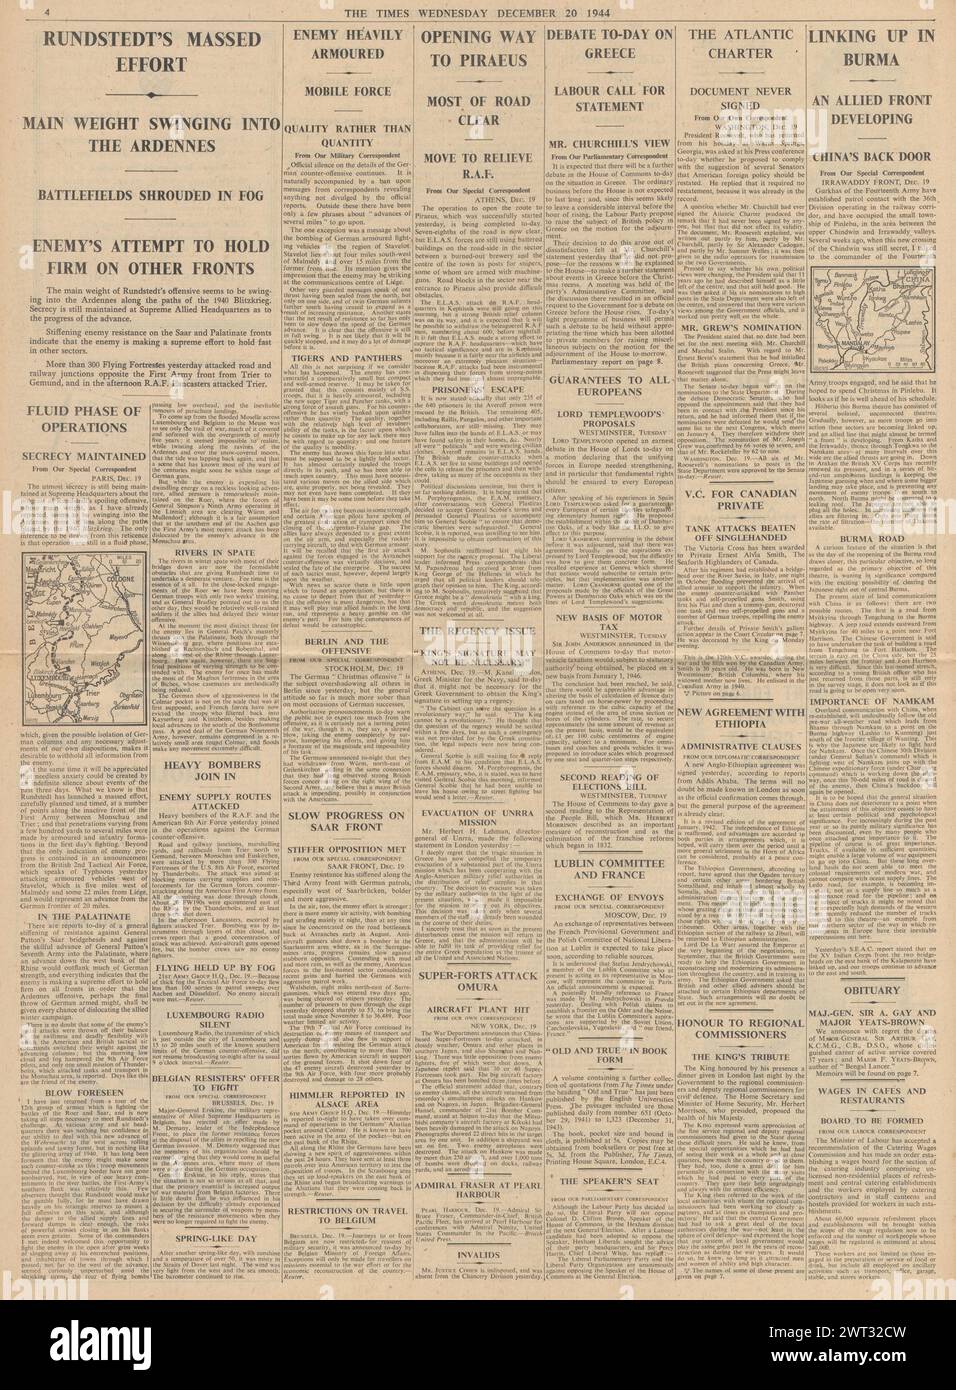 1944 The Times riportava la Battaglia delle Ardenne, il dibattito parlamentare sulla situazione in Grecia, carta atlantica non firmata, gli Alleati si unirono in Birmania e la VC fu assegnata a Ernest Smith Foto Stock